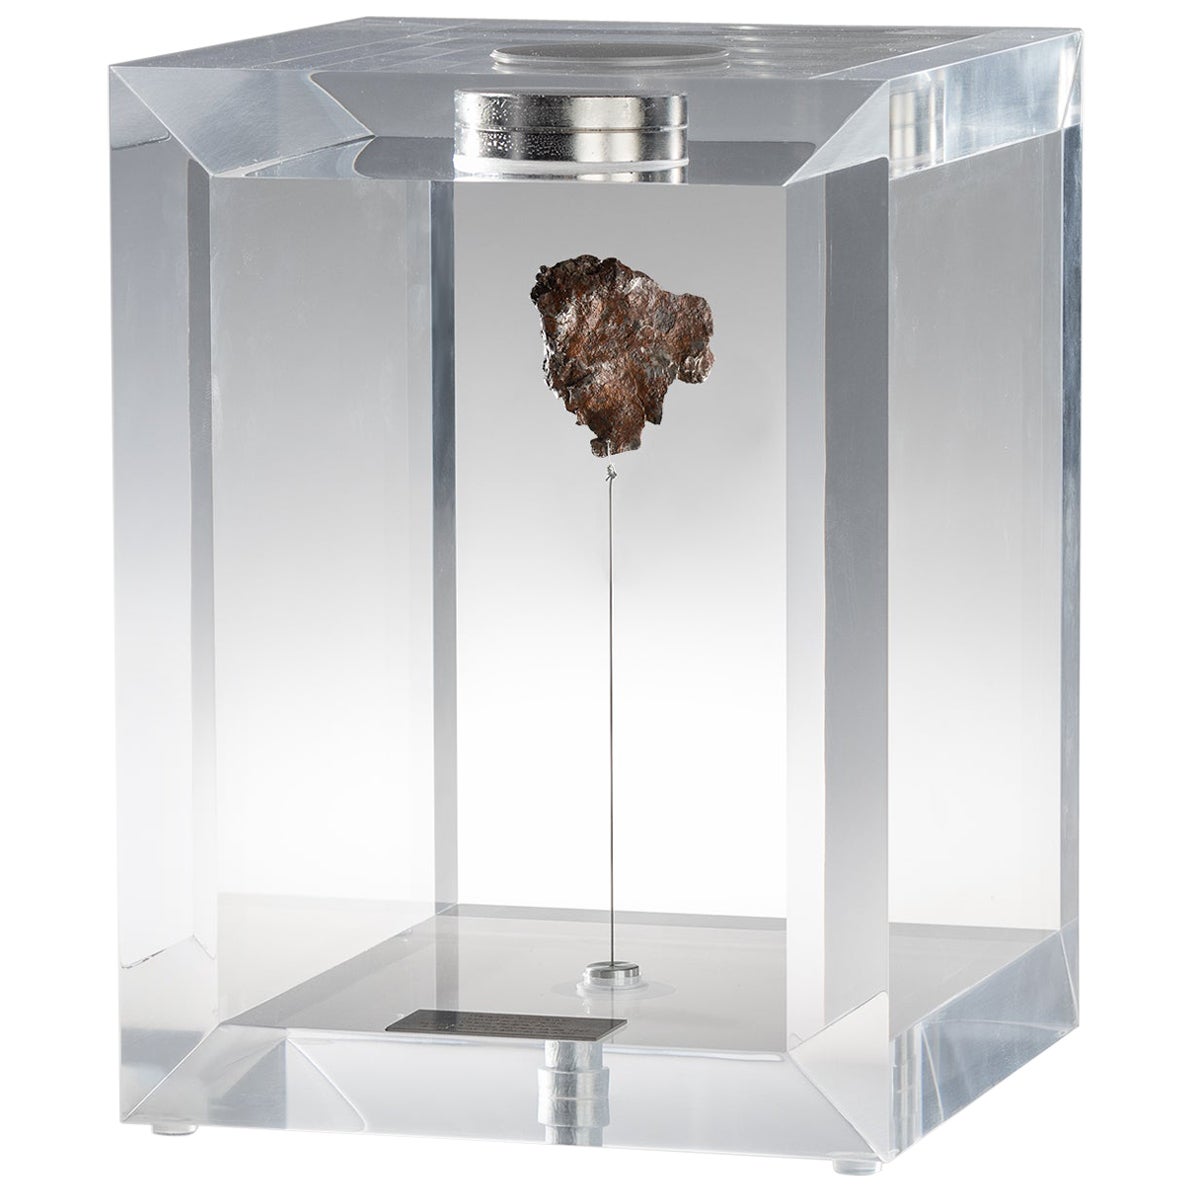 Space Box, russischer Sikhote Alin Meteorit in Acrylbox, Original-Design